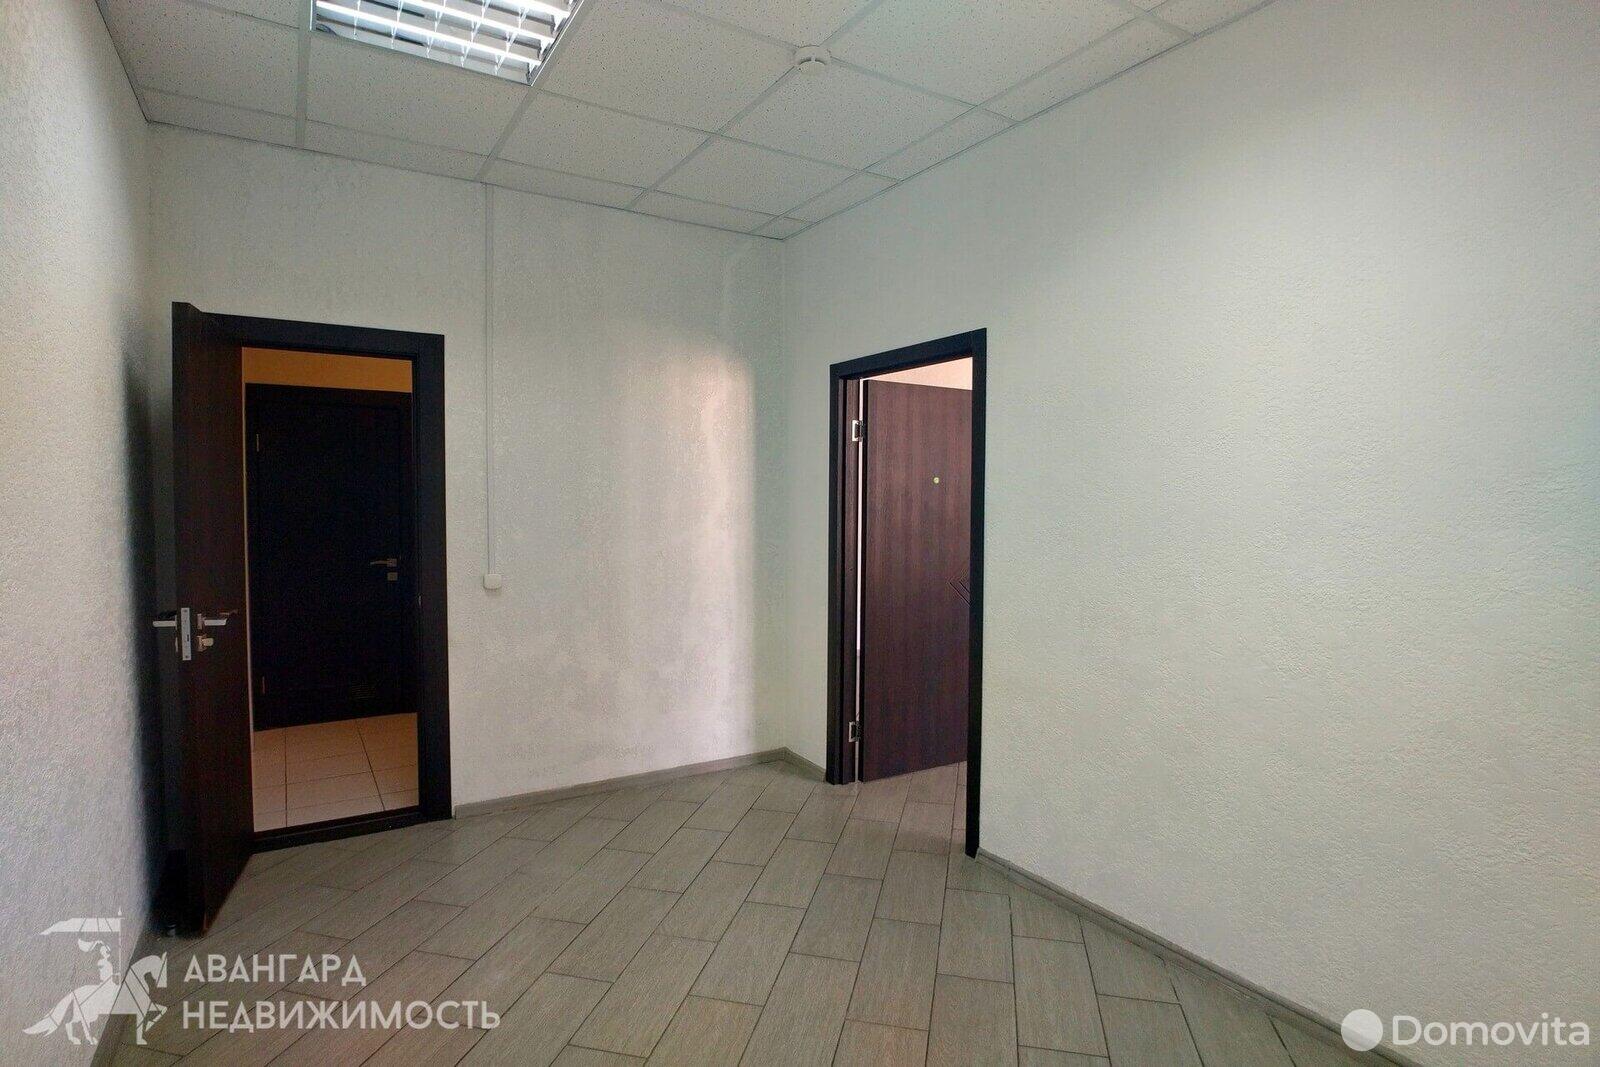 Аренда офиса на ул. Волгоградская, д. 6/А в Минске, 674EUR, код 9452 - фото 6